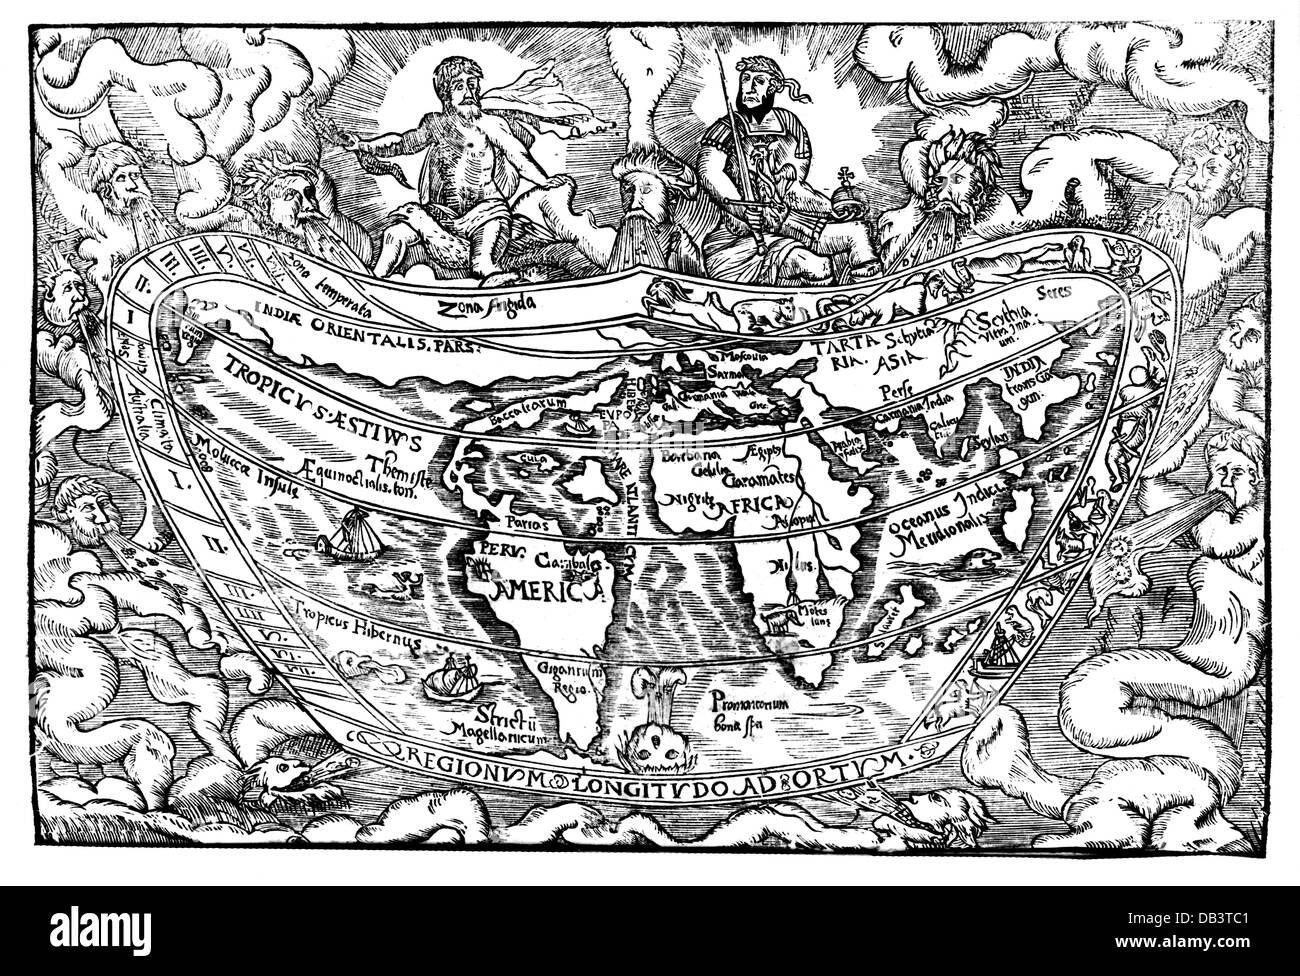 Cartographie, cartes du monde, carte du monde de la chronique mondiale de Marcin Bielski, coupe de bois, Pologne, 1551, droits additionnels-Clearences-non disponible Banque D'Images